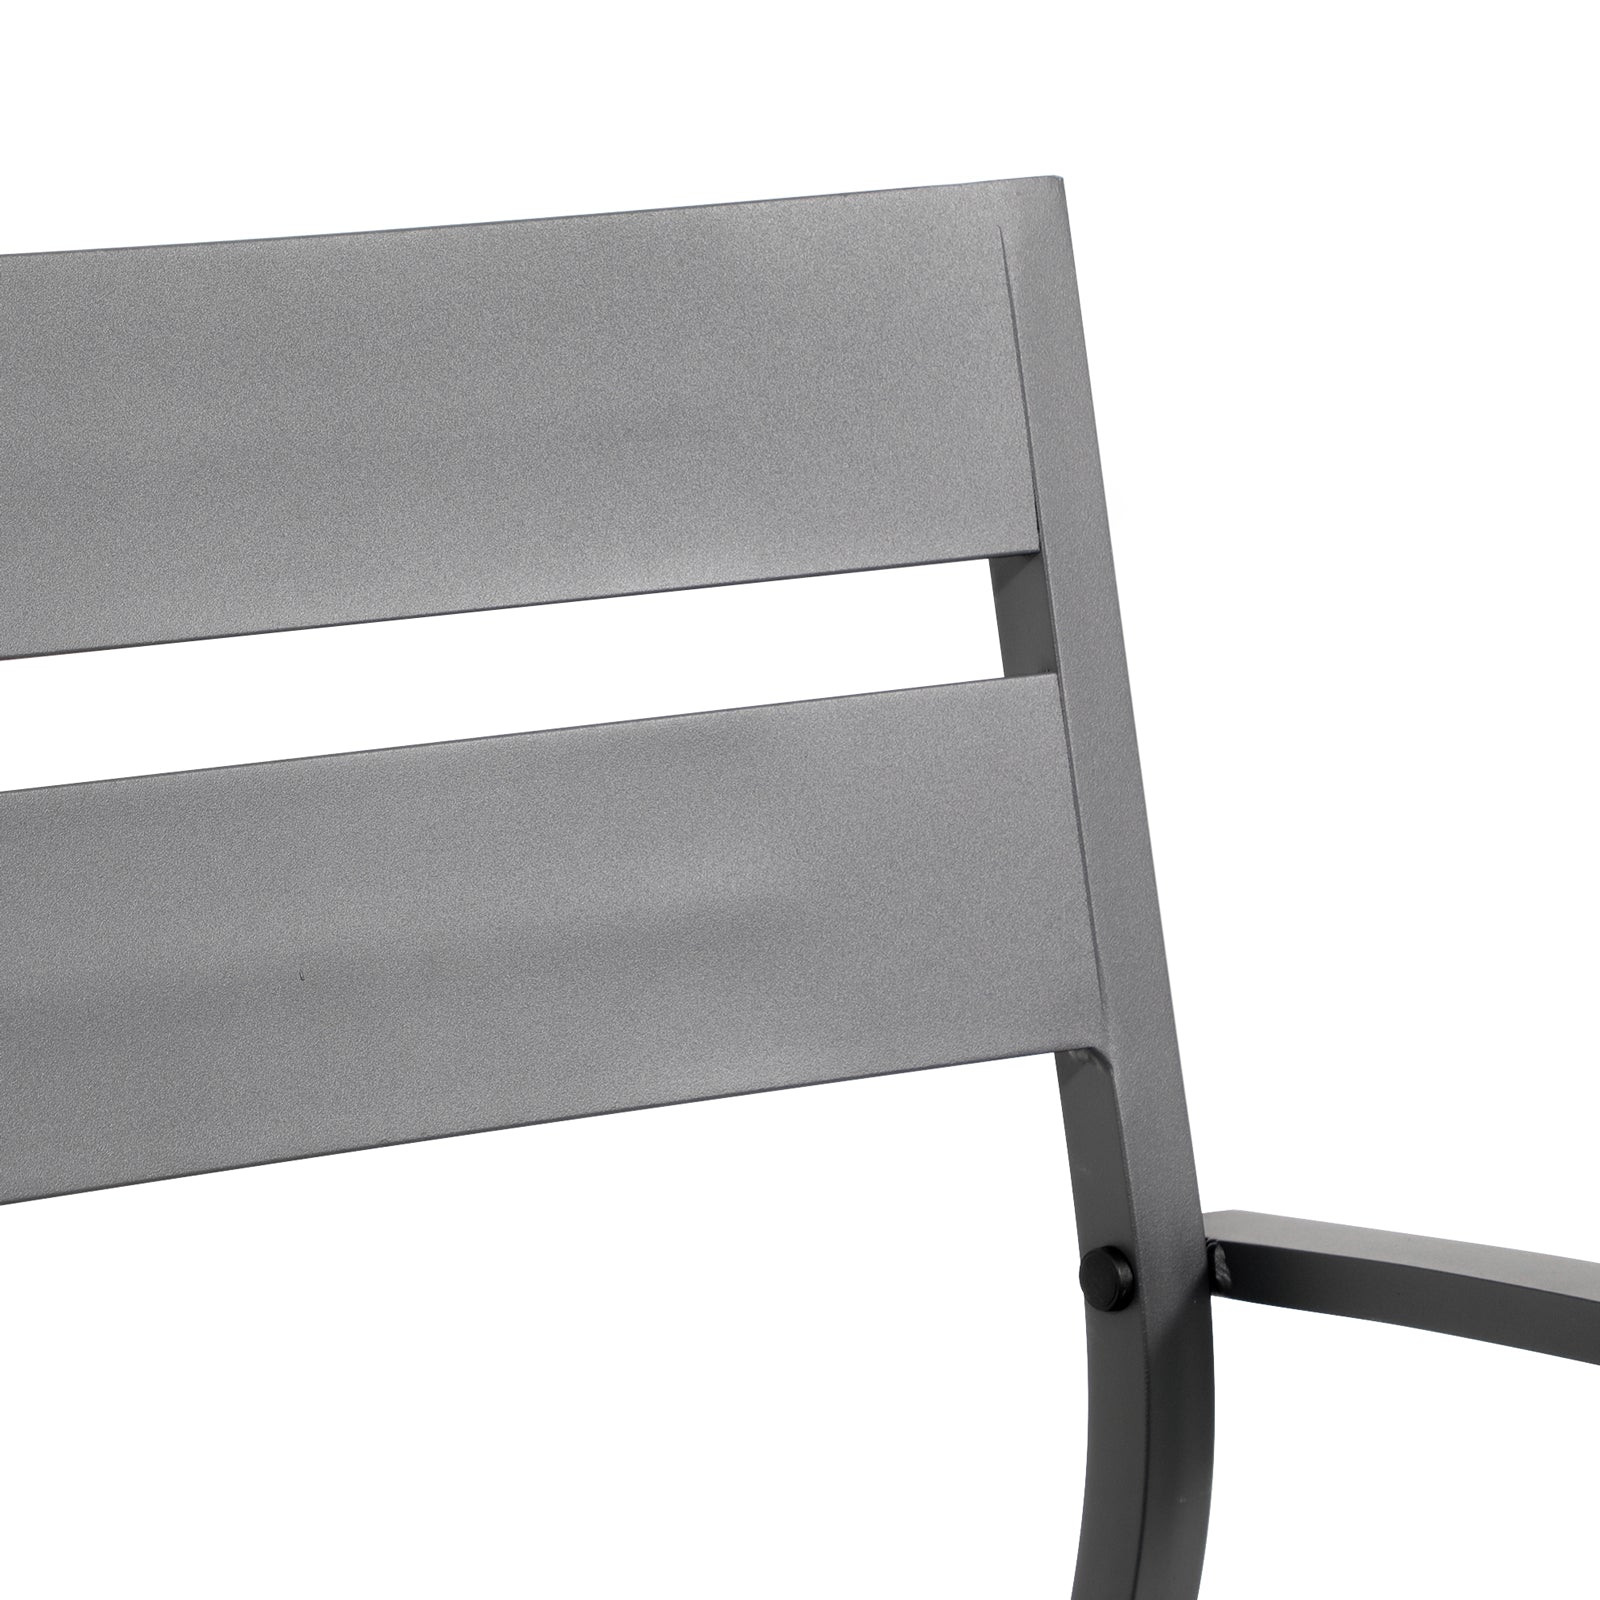 Salina dining chair, dark grey, aluminum design, backrest detail -Jardina Furniture